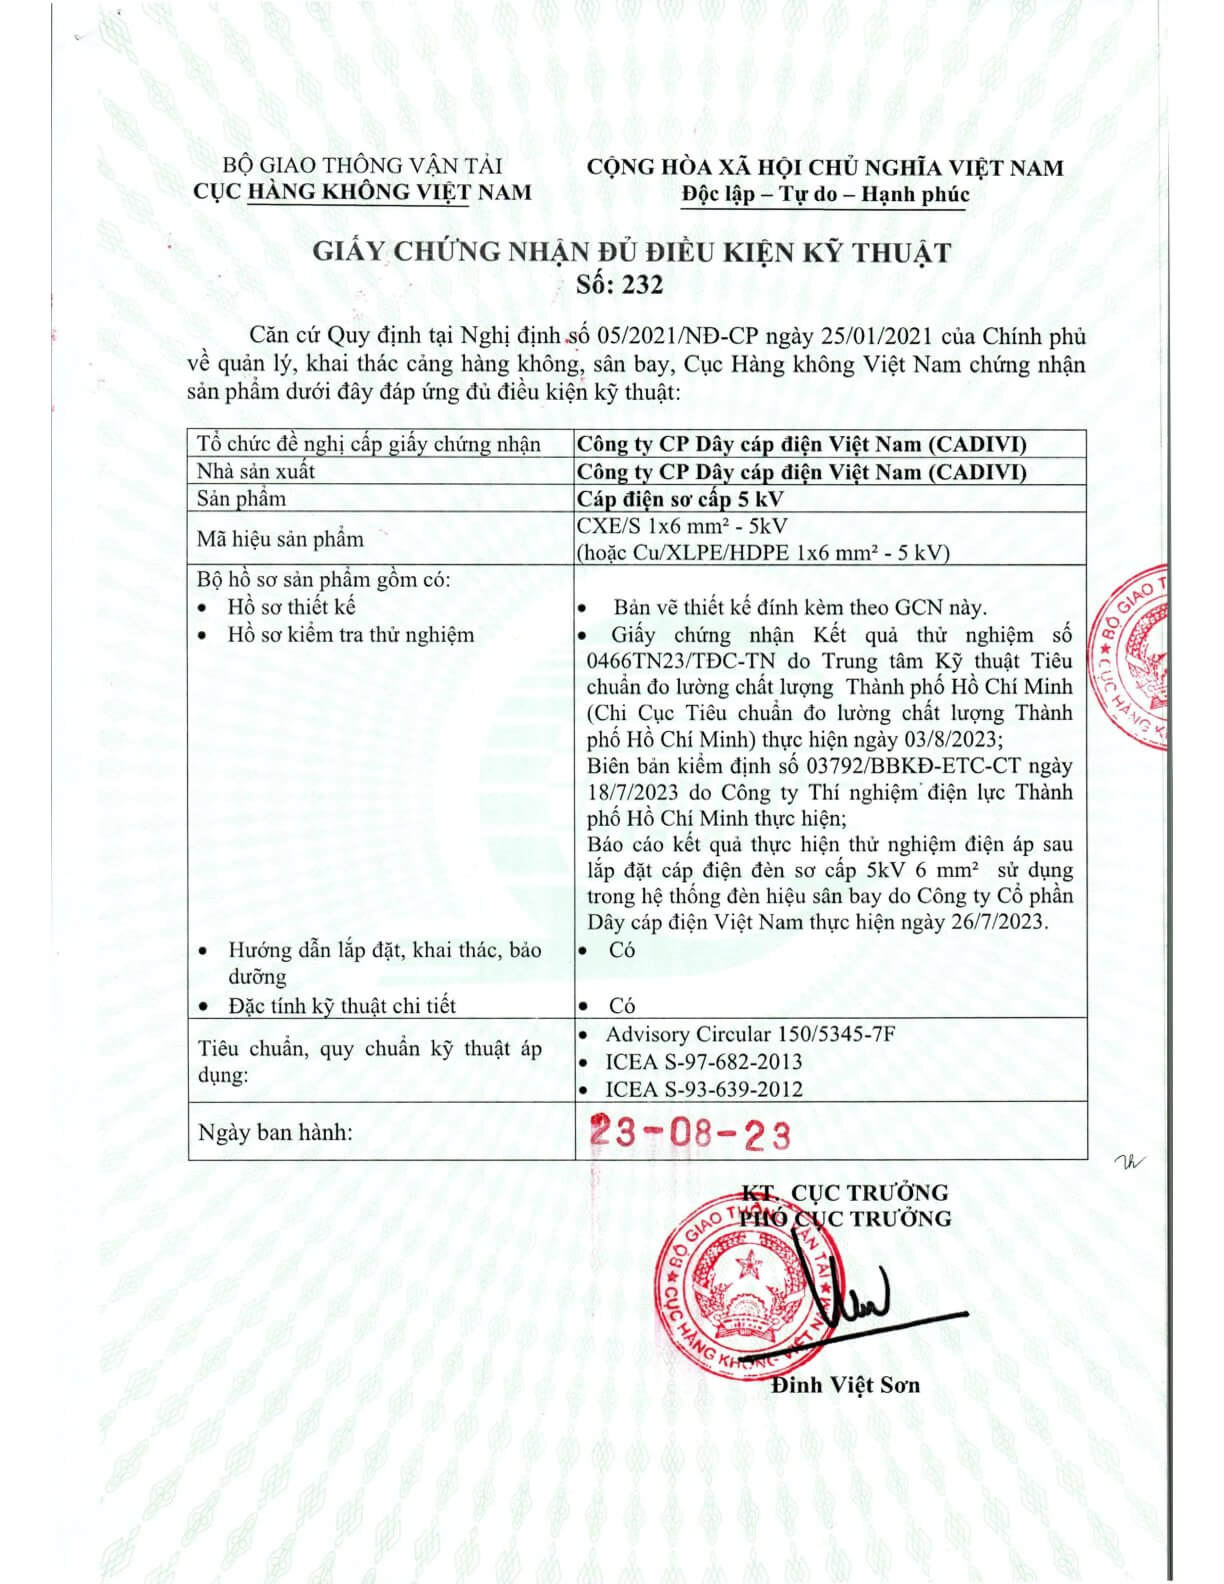 Chứng nhận đủ điều kiện kỹ thuật của Cục hàng không Việt Nam